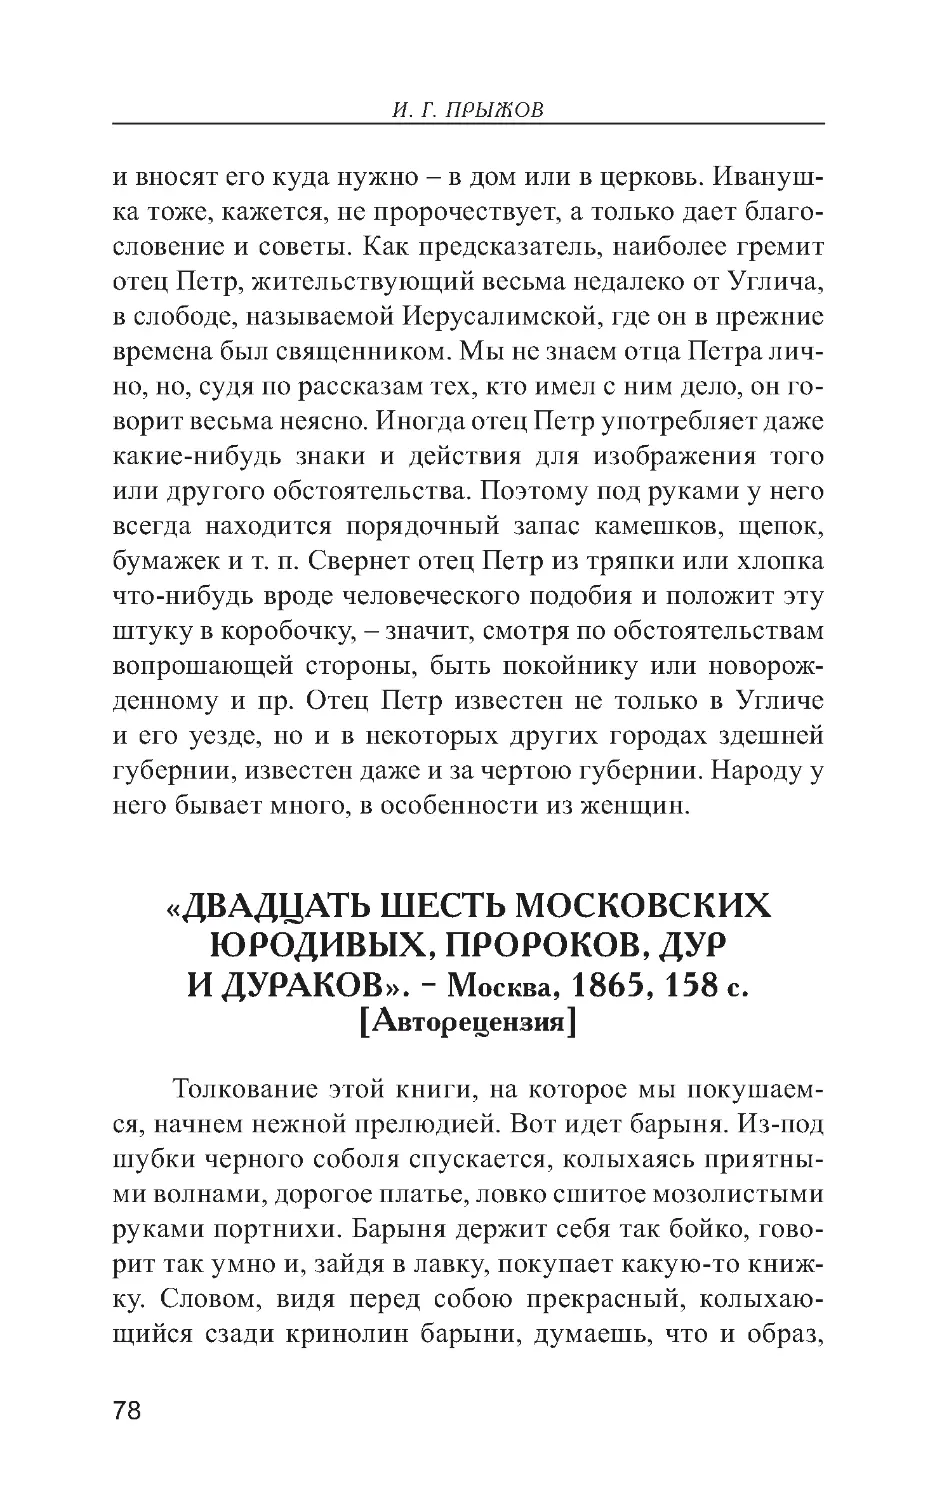 «Двадцать шесть московских юродивых, пророков, дур и дураков». – Москва, 1865, 158 с. [Авторецензия]